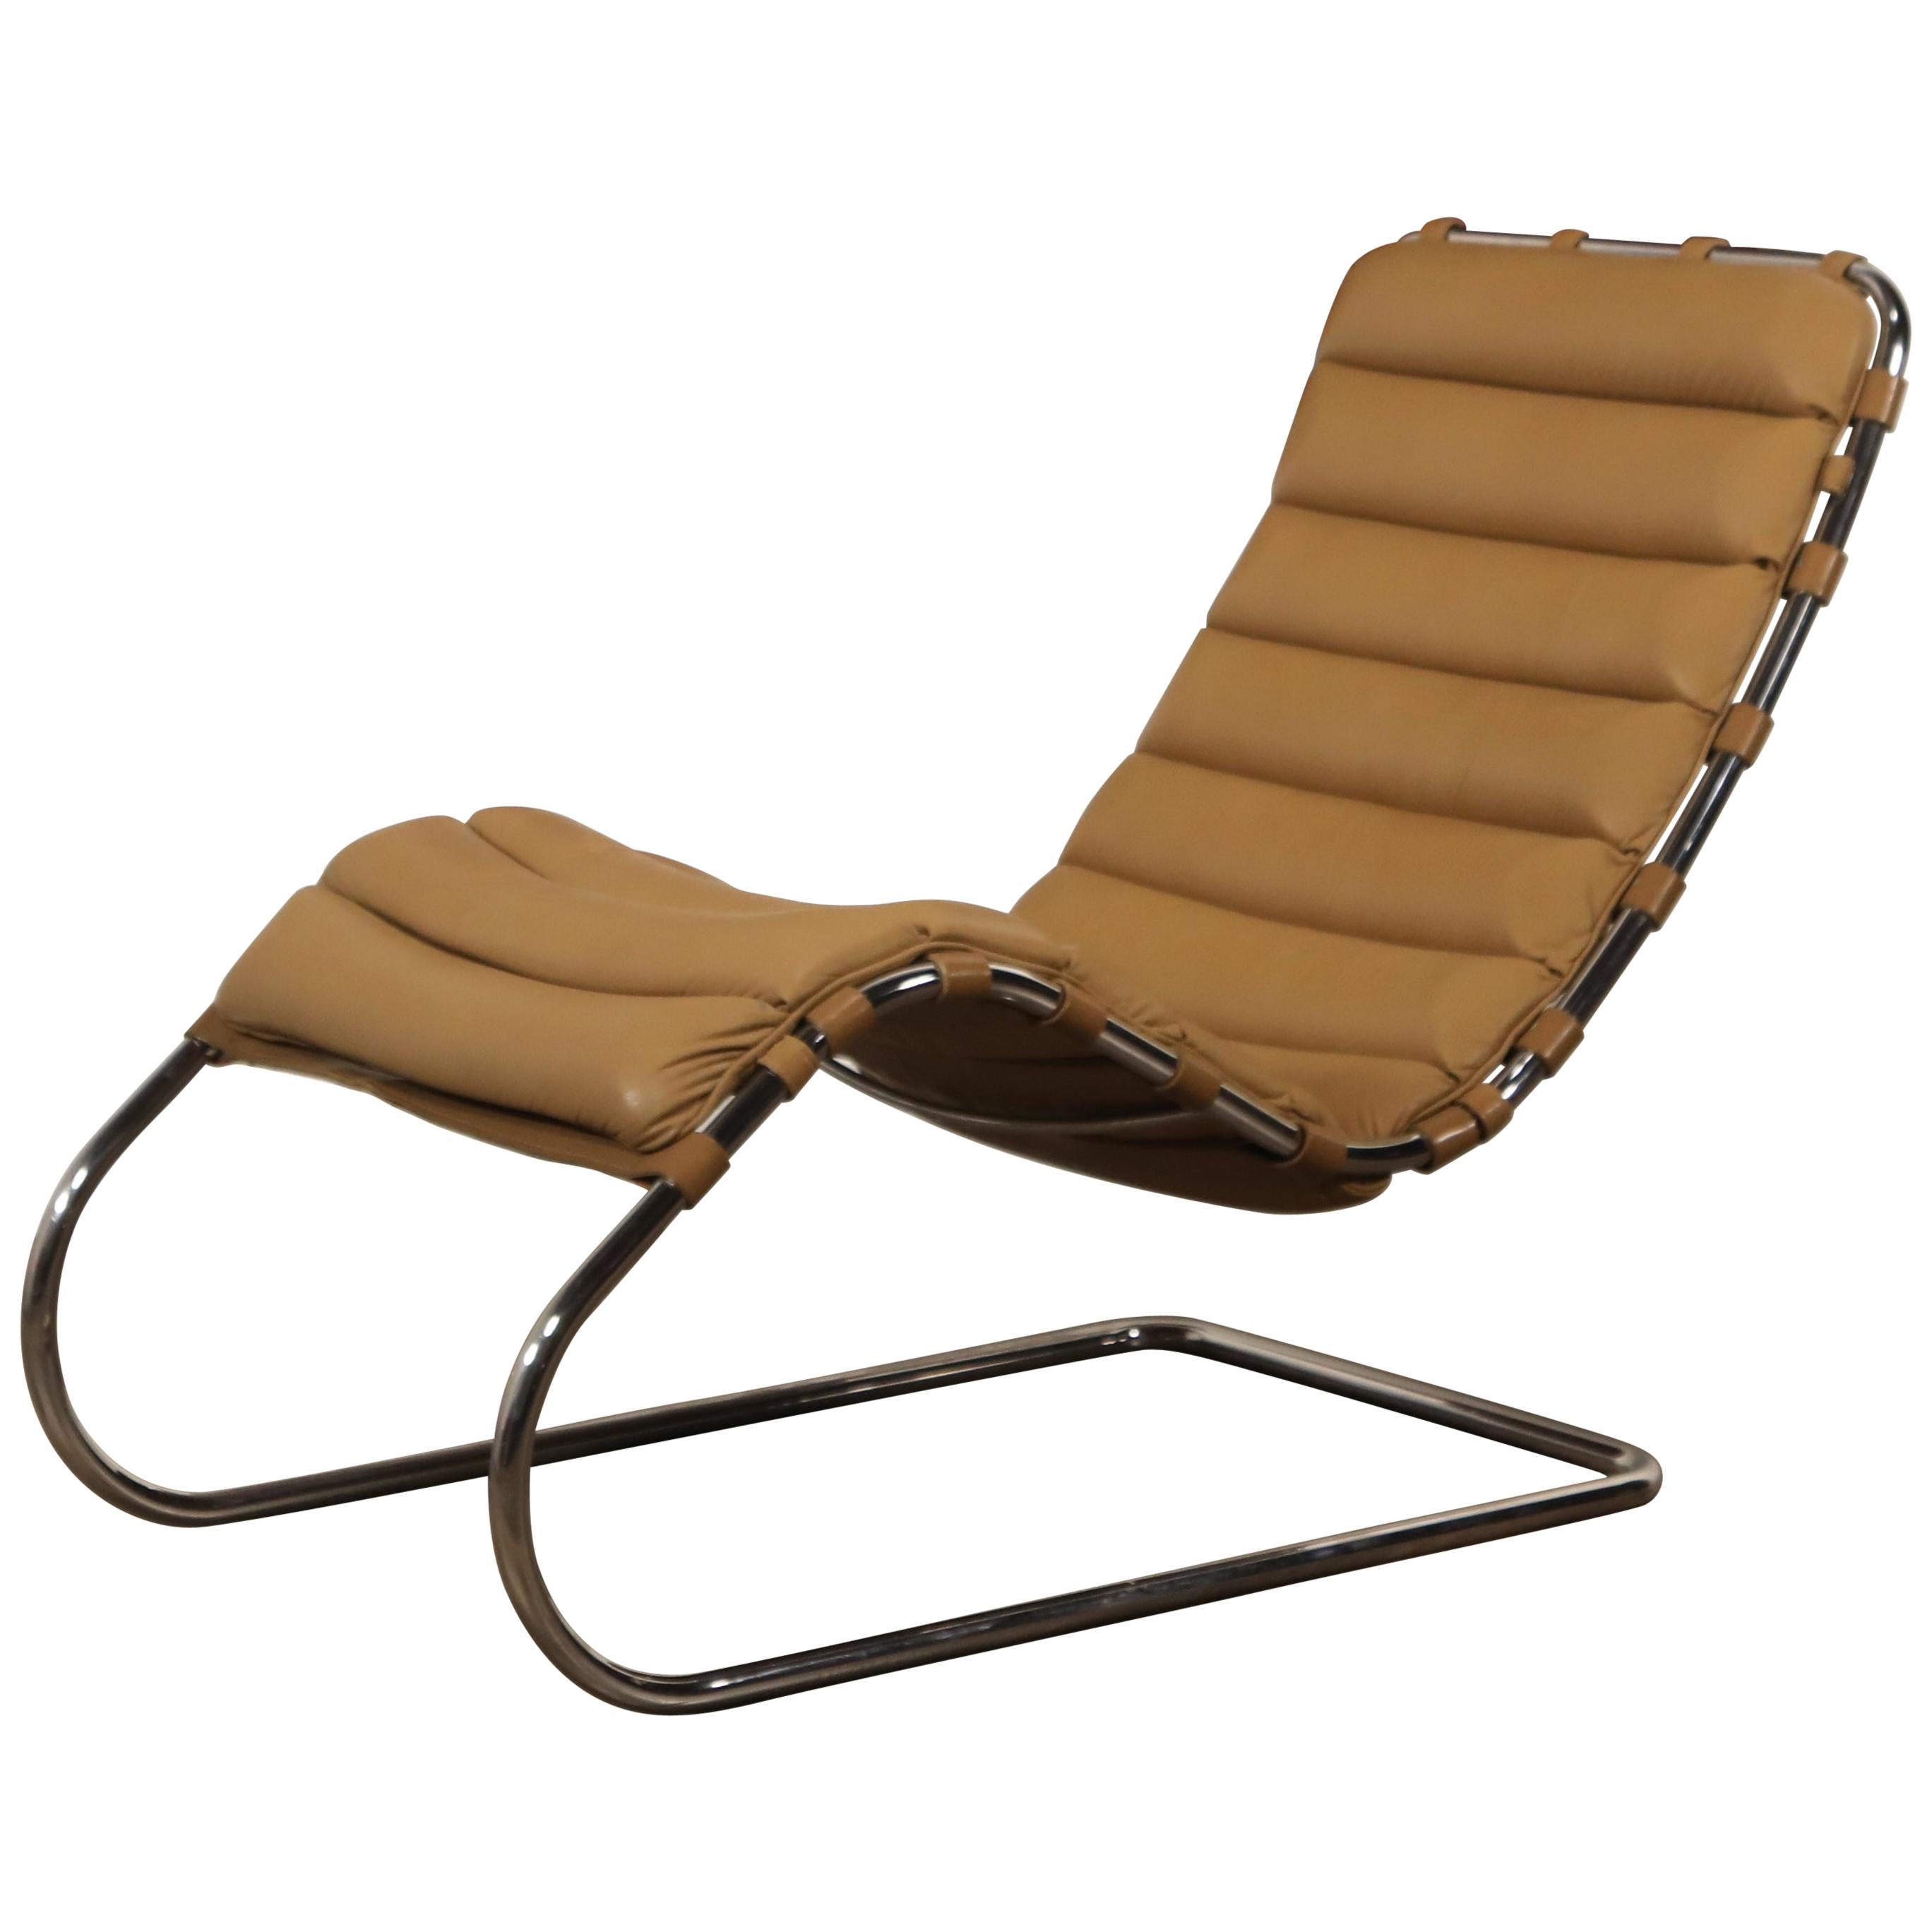 MR Chaise Lounge Chair von Mies van der Rohe für Knoll International:: signiert 1978